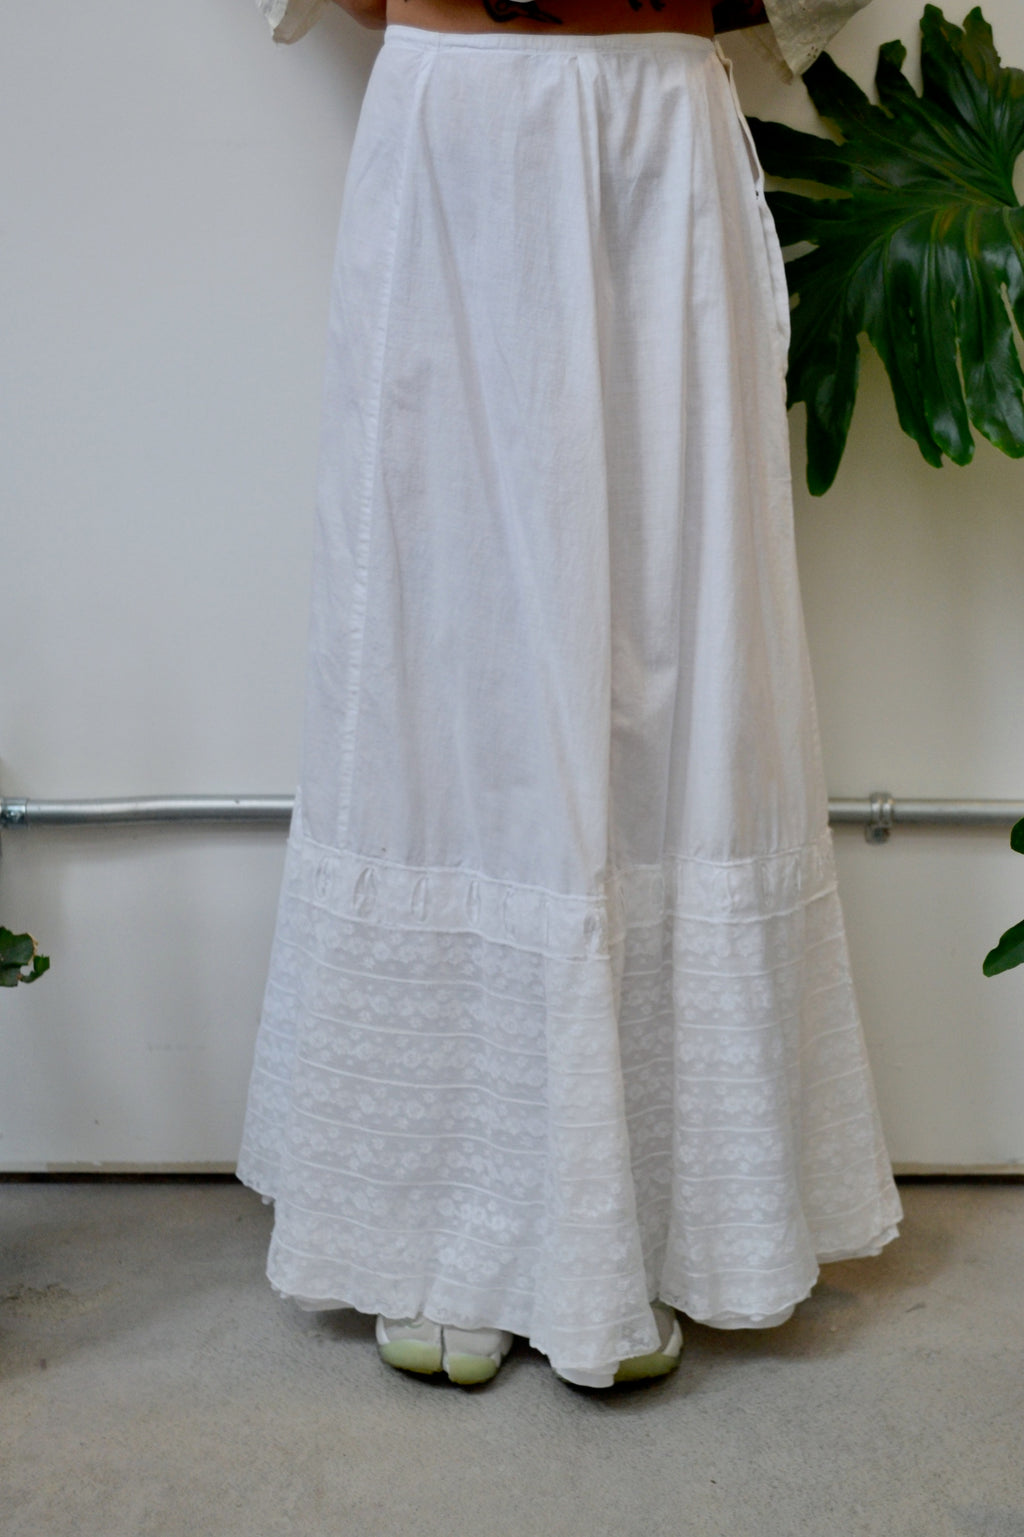 Antique Cotton Petticoat